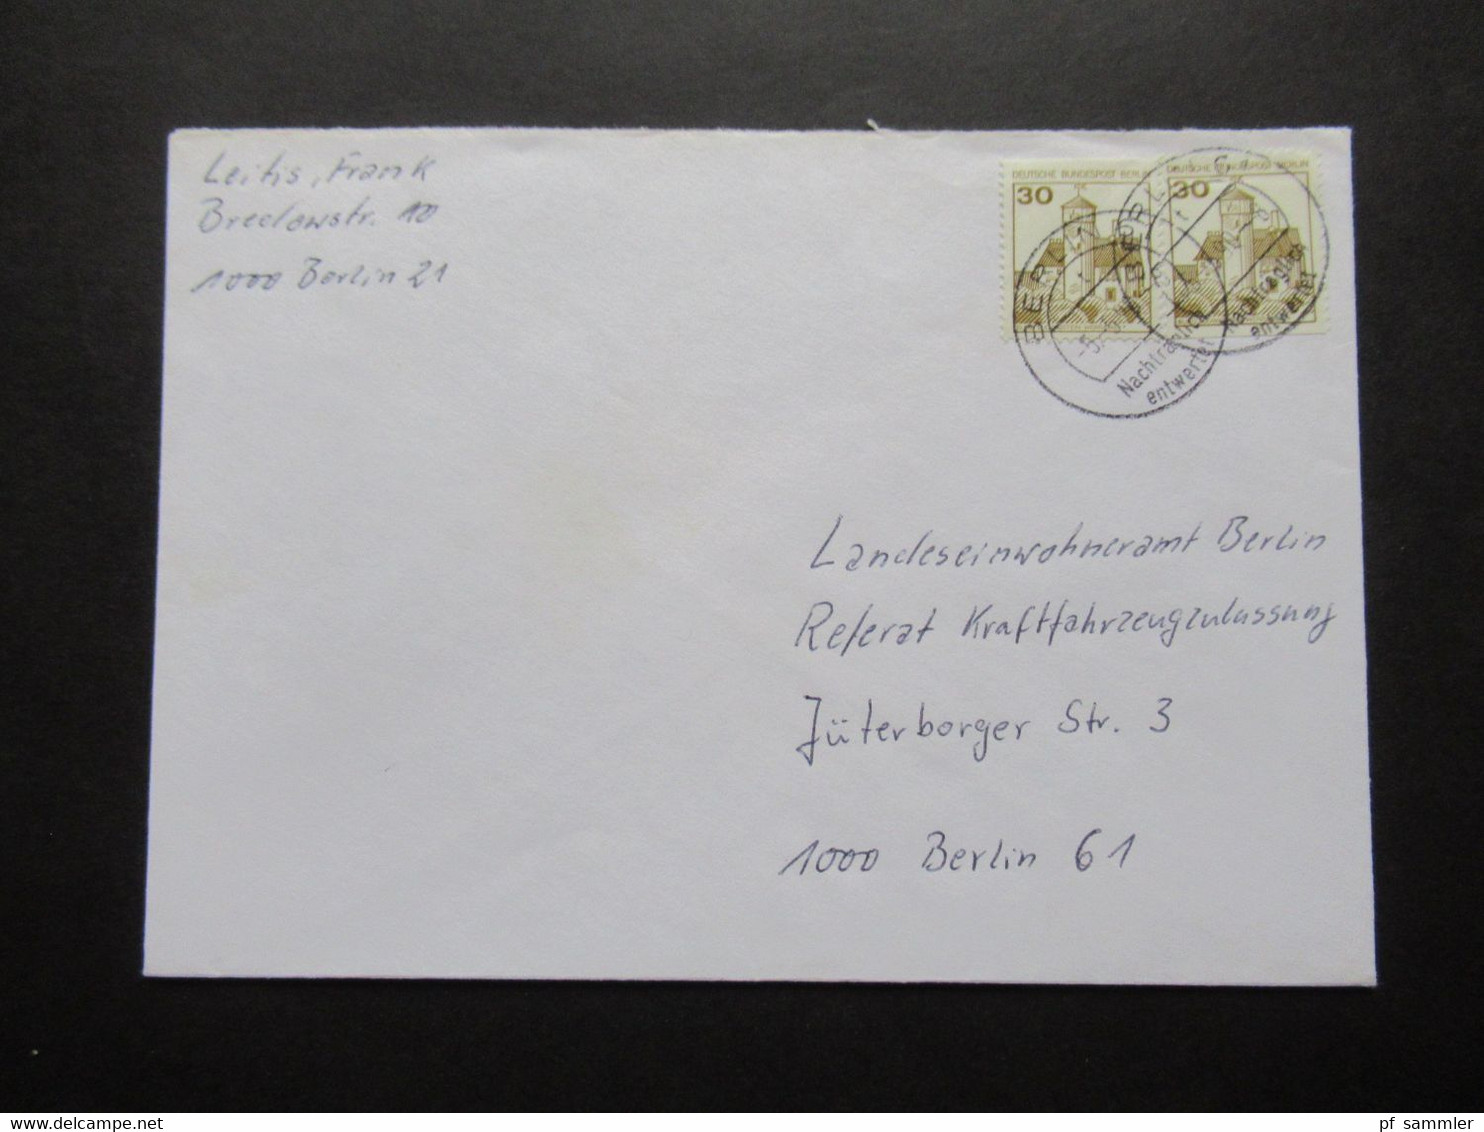 Berlin (West) 1977 Verwendet 1990 Freimarken BuS Nr.534 C / D Stempel Berlin Nachträglich Entwertet Ortsbrief Berlin - Covers & Documents